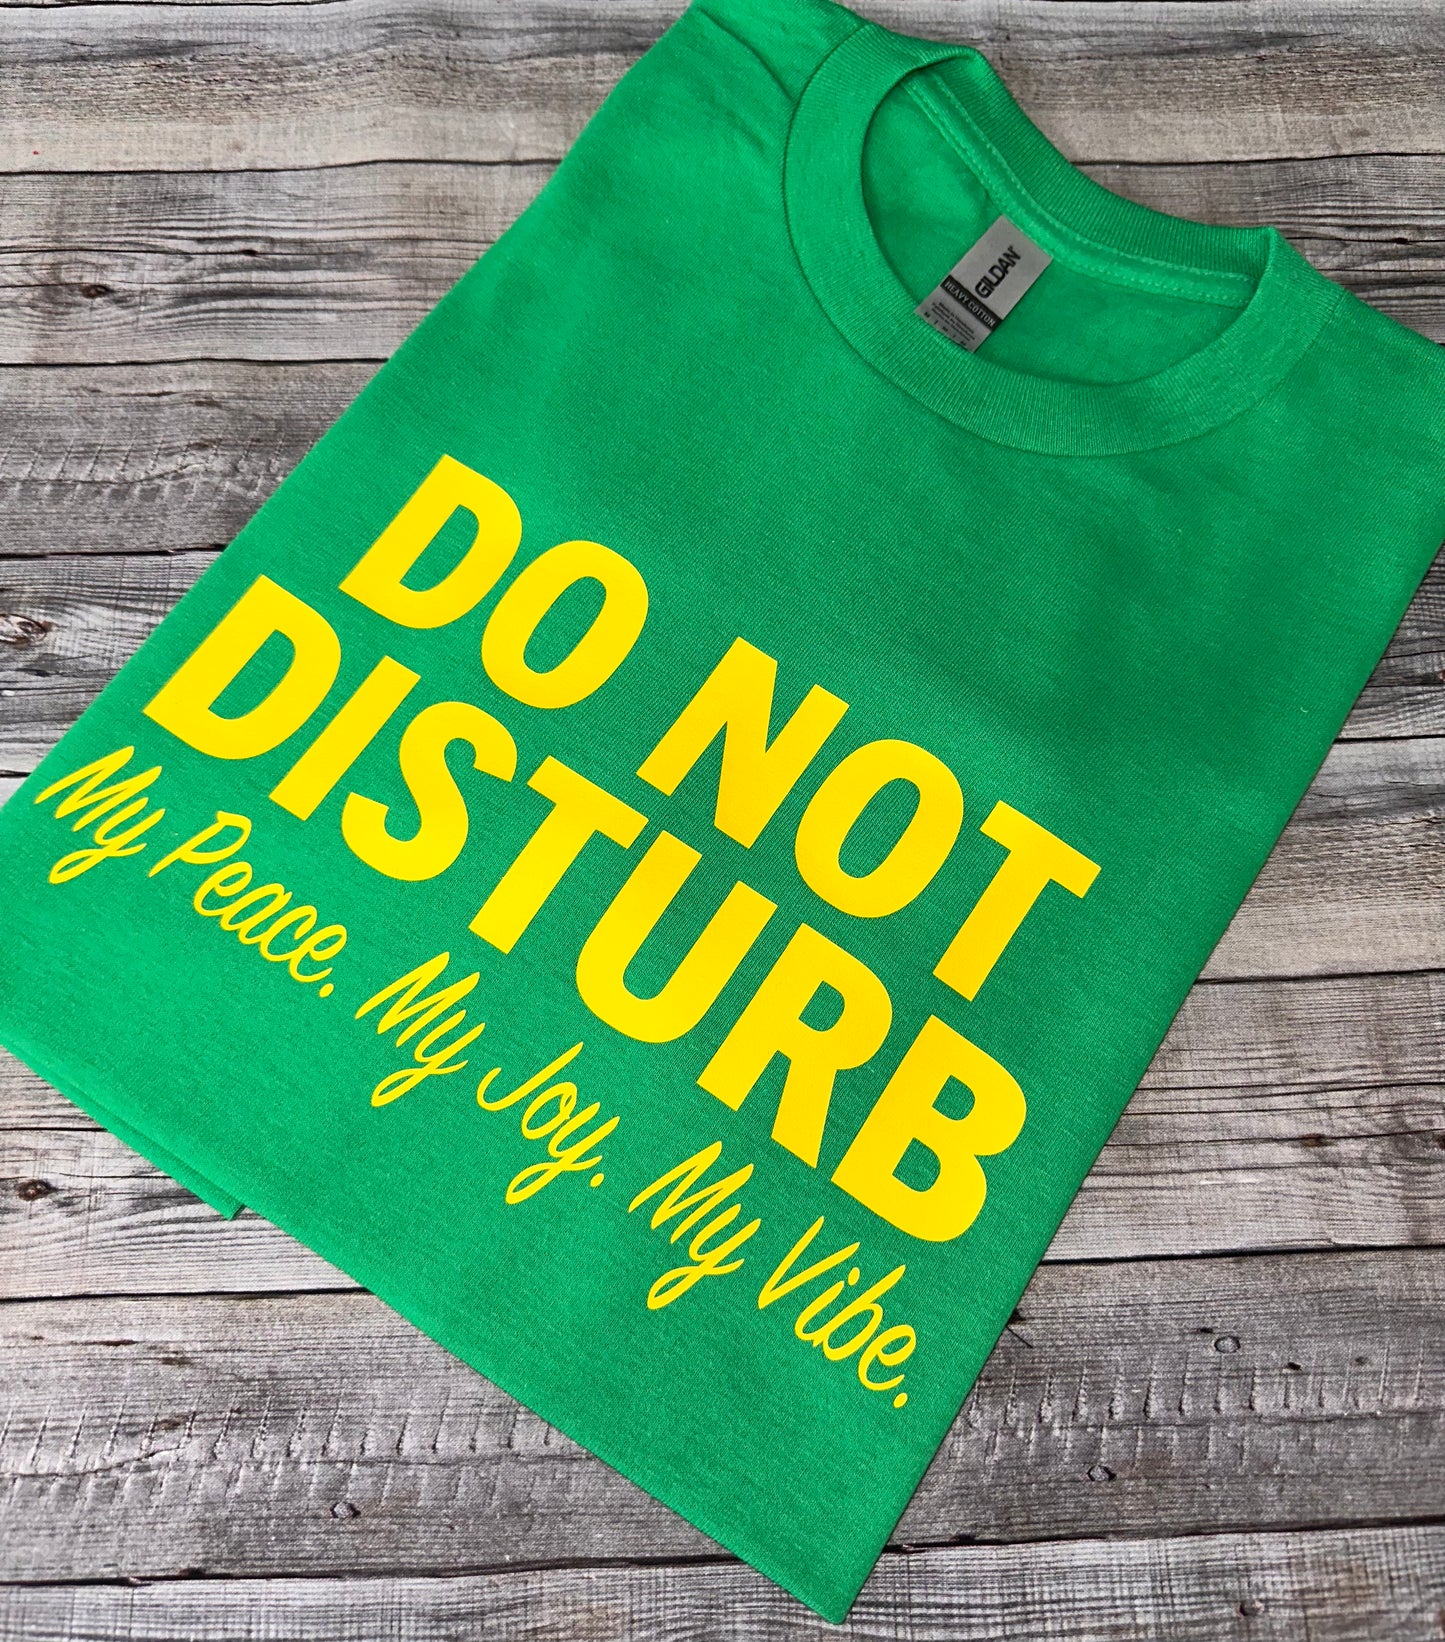 Do Not Disturb Shirt